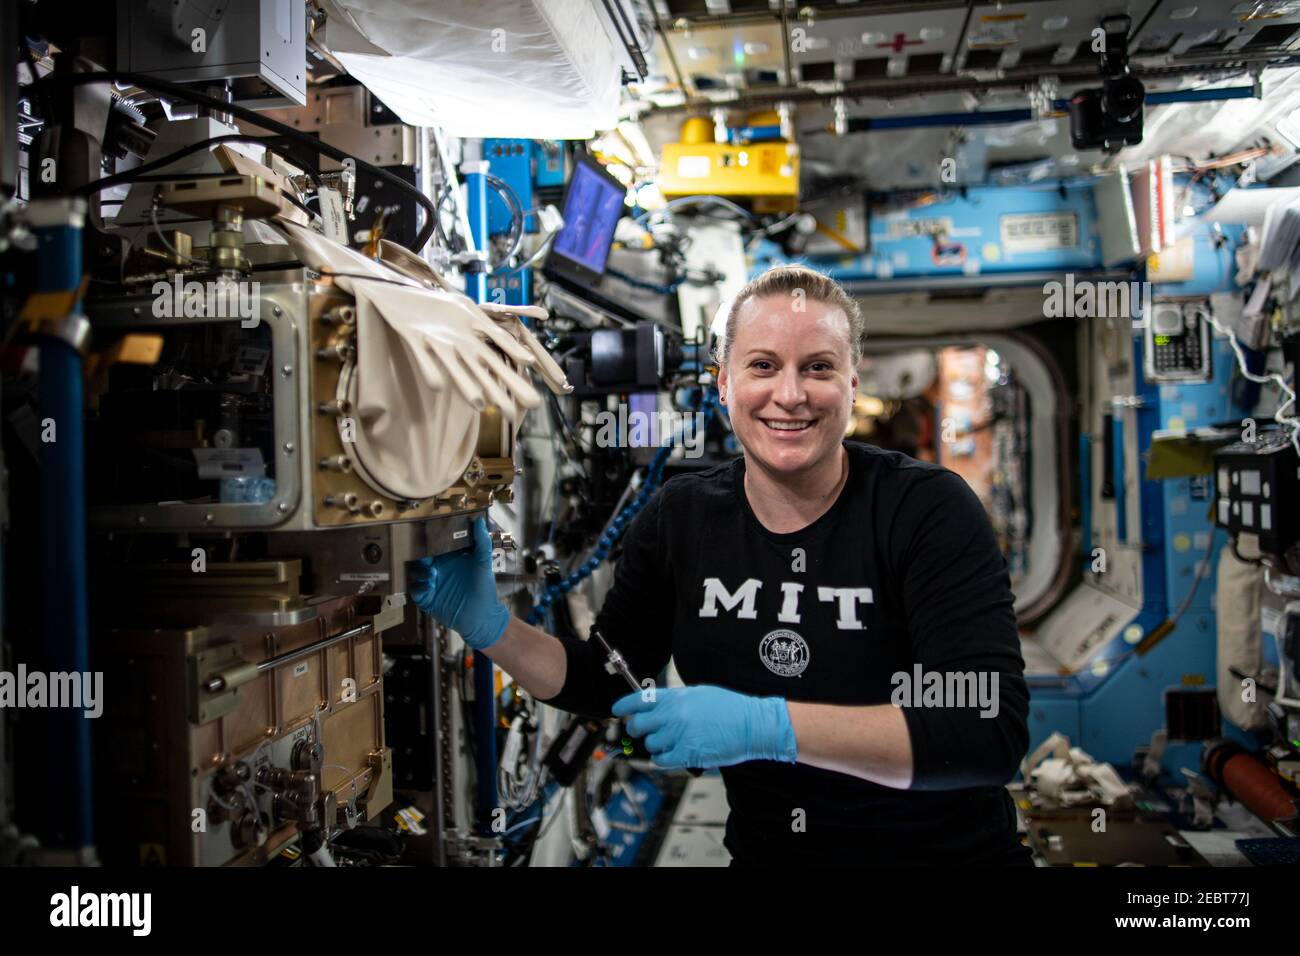 NASA-Astronautin und Expedition 64 Flugingenieurin Kate Rubins richtet die ACE-T-Ellipsoiden-Studie im Lichtmikroskopiemodul an Bord der Internationalen Raumstation am 14. Januar 2021 in Earth Orbit ein. Die Untersuchung entwirft und montiert komplexe dreidimensionale Kolloide – kleine Partikel, die in einem flüssigen Medium suspendiert werden – und steuert die Dichte und das Verhalten der Partikel mit der Temperatur. Stockfoto